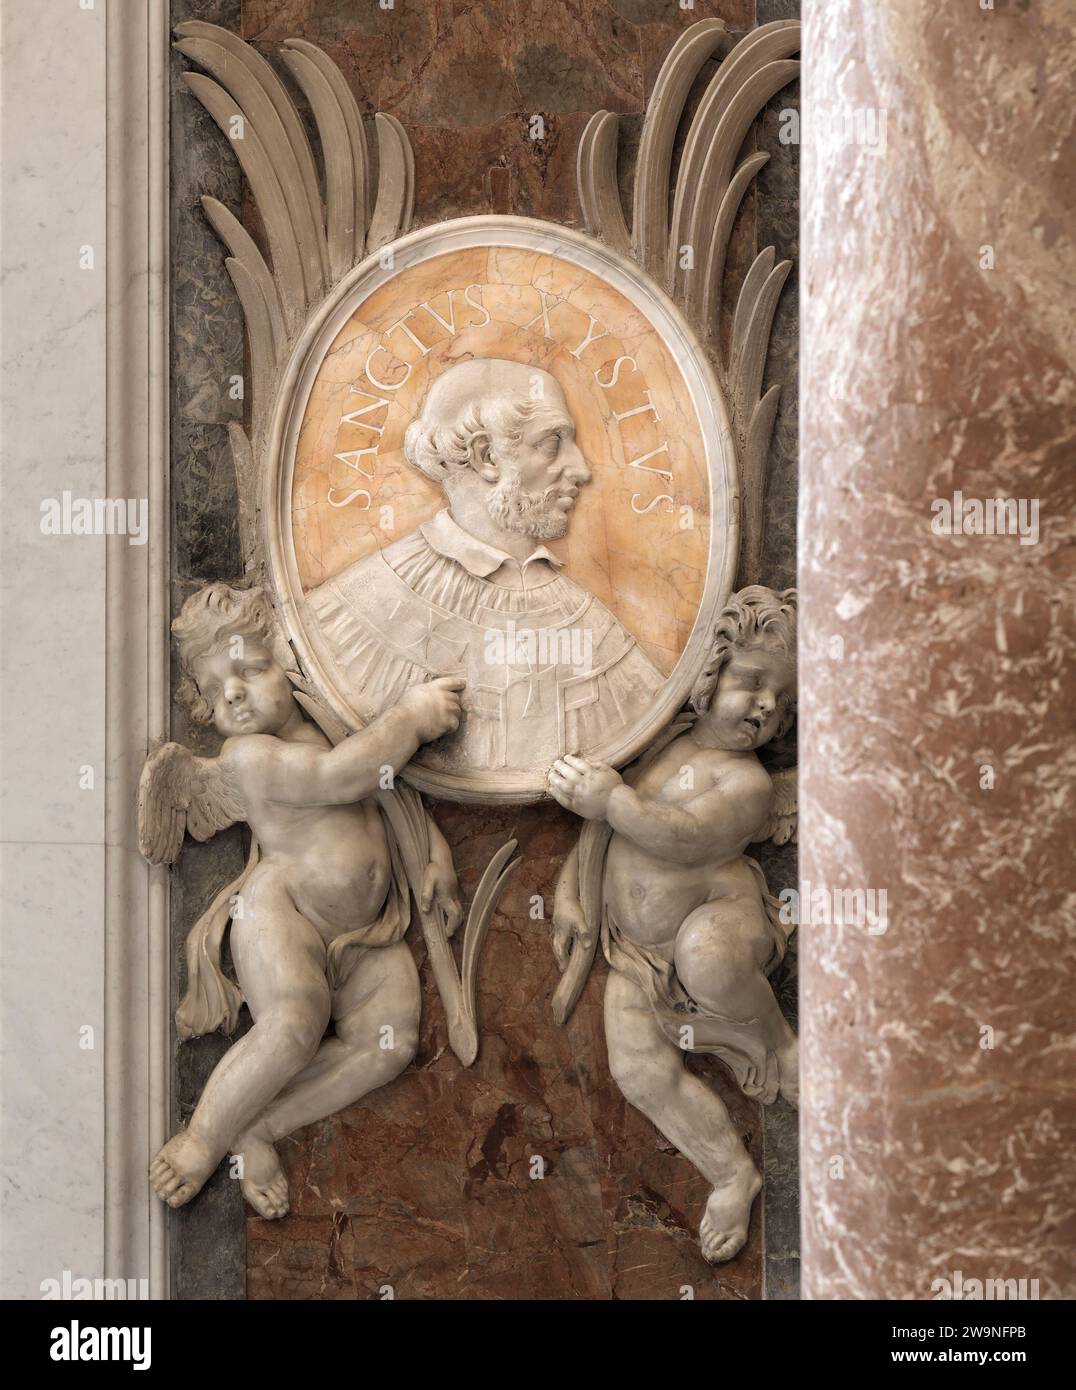 Plaque commémorative du pape Saint-Sixte Ier, mort en 125 après J.-C., dans la basilique Saint-Pierre, Vatican, Rome, Italie Banque D'Images